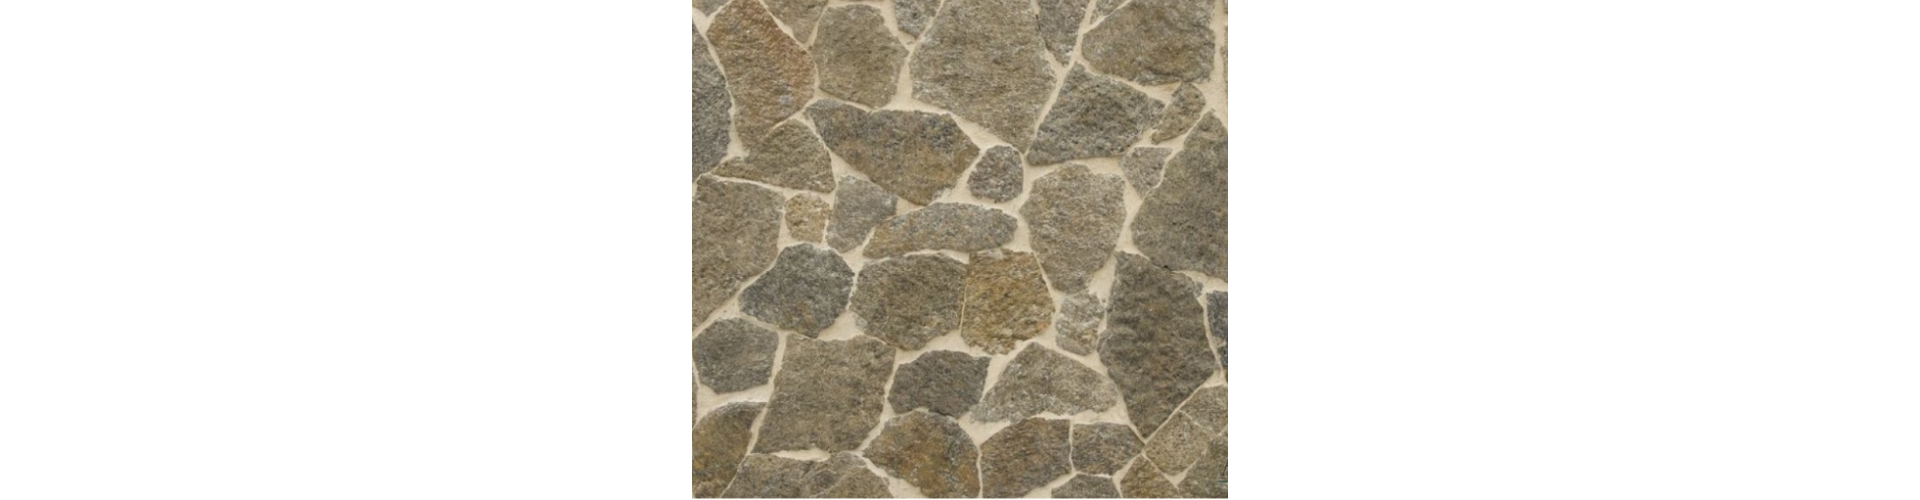 ArtStonex -  płaski kamień naturalny o nieregularnych kształtach